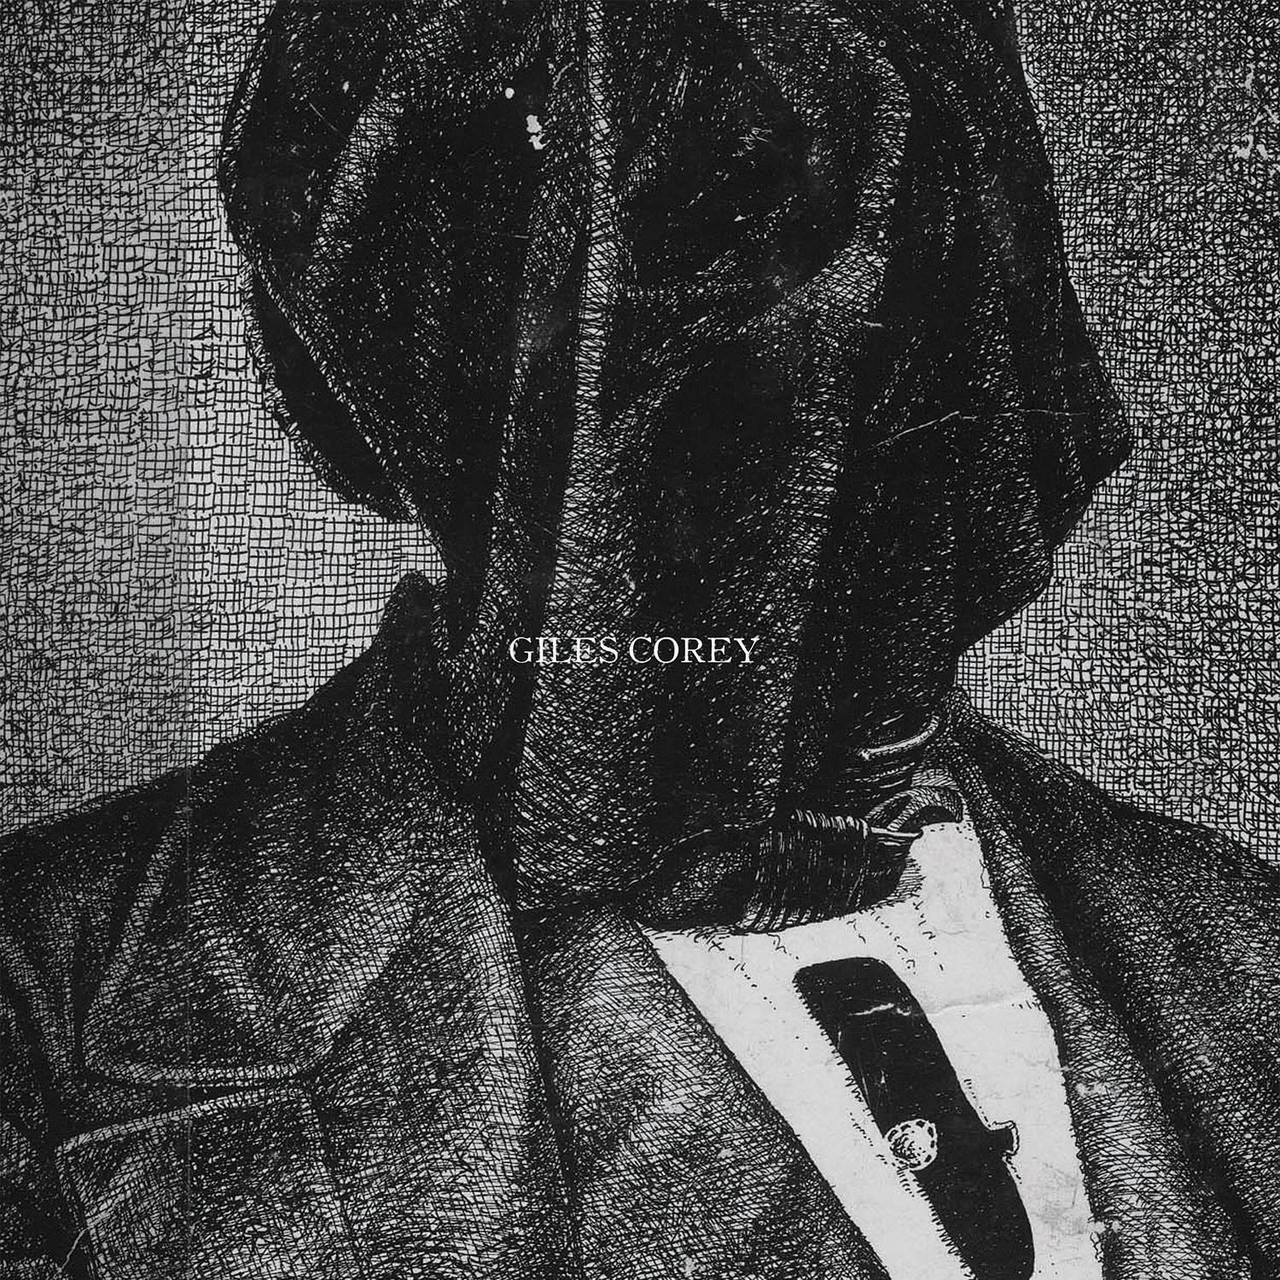 Capa do disco Giles Corey. A imagem é uma pintura em preto e branco, de uma pessoa, vestindo um terno com um pedaço de pano cobrindo a cabeça e o escrito Giles Corey na parte central da imagem.